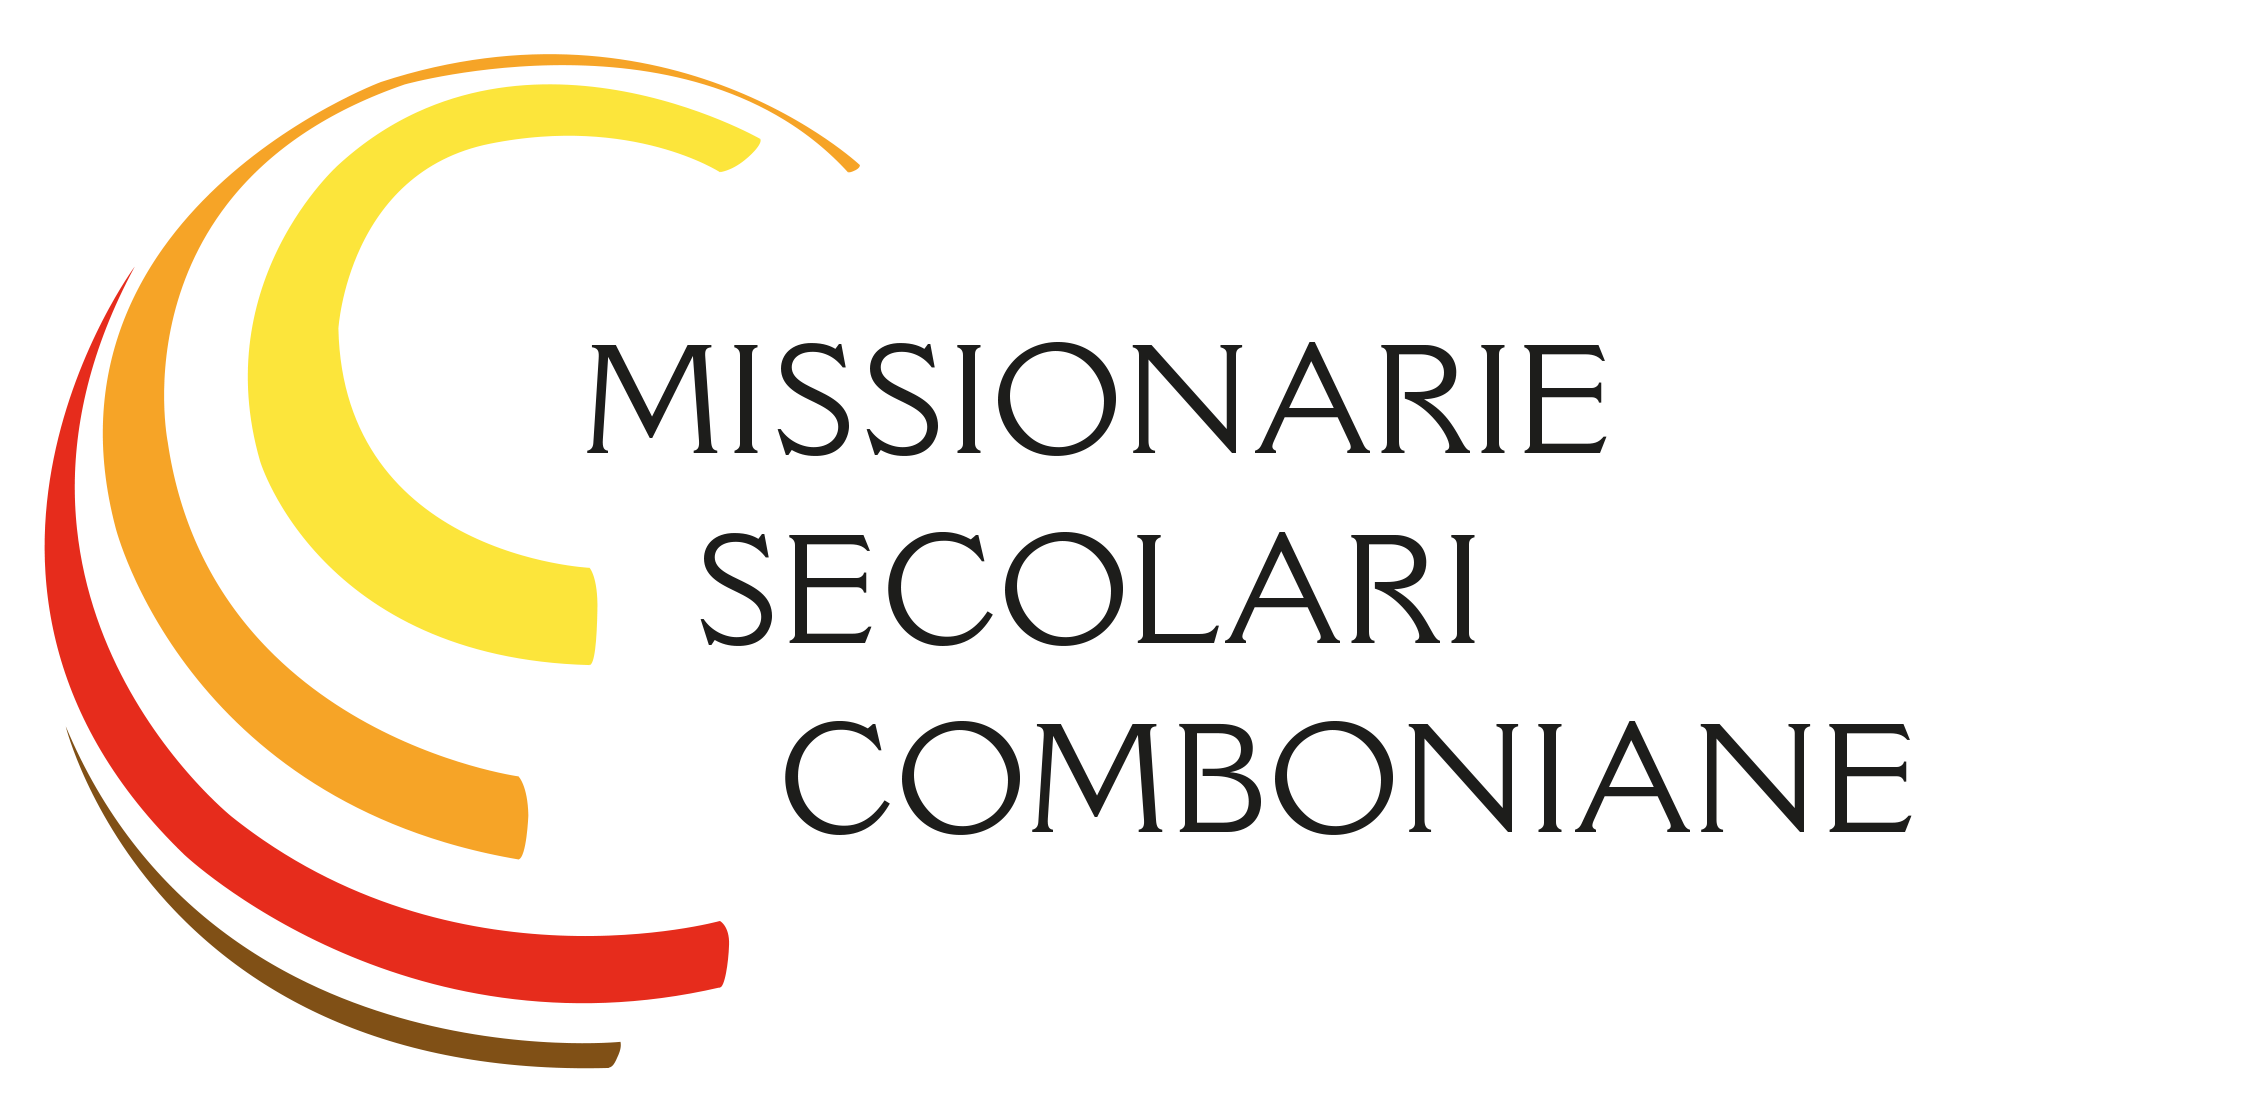 Missionarie Secolari Comboniane